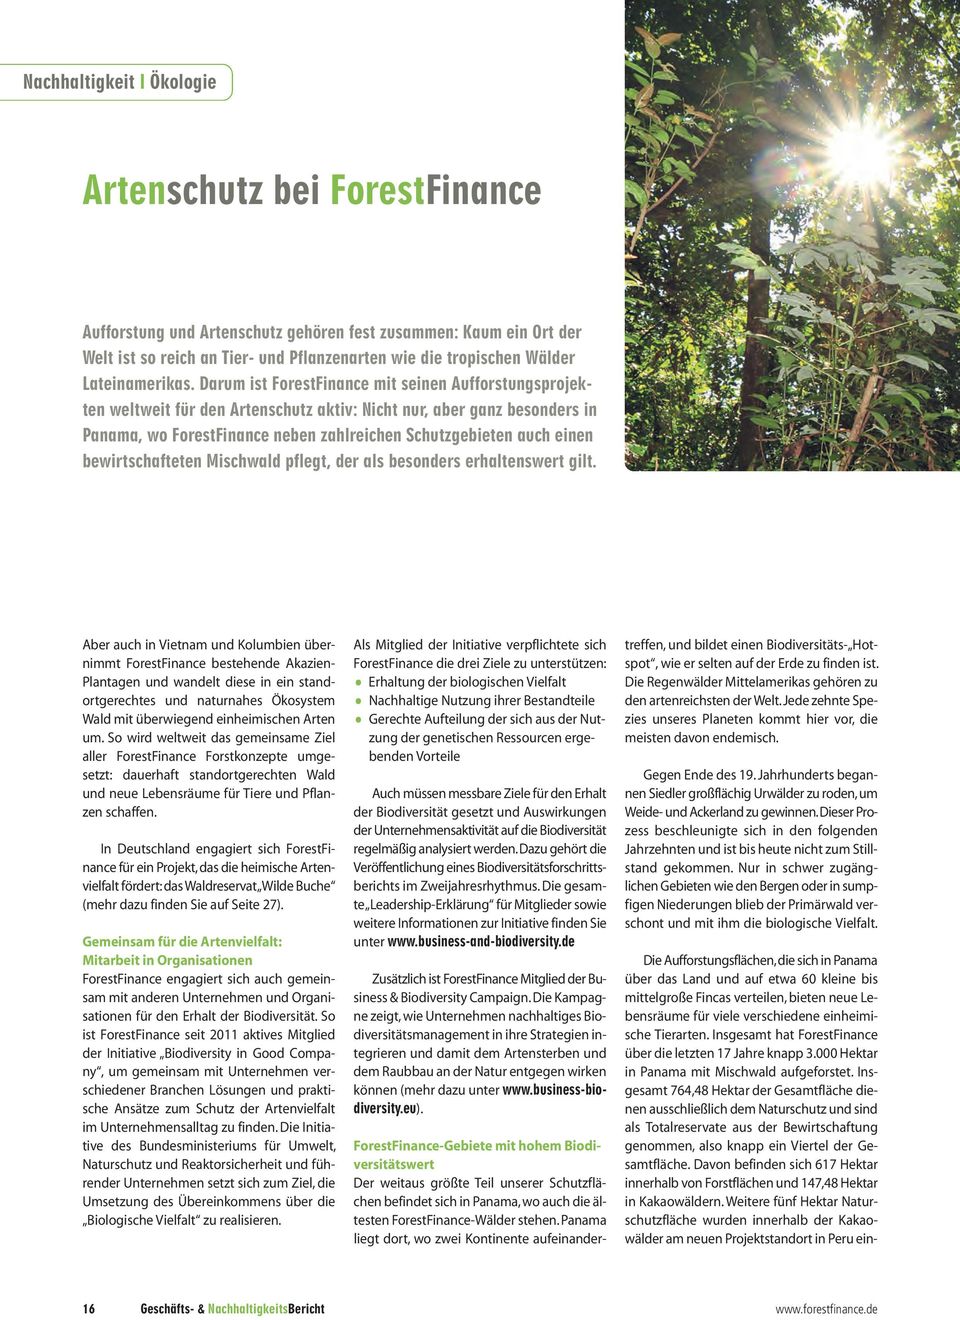 Darum ist ForestFinance mit seinen Aufforstungsprojekten weltweit für den Artenschutz aktiv: Nicht nur, aber ganz besonders in Panama, wo ForestFinance neben zahlreichen Schutzgebieten auch einen